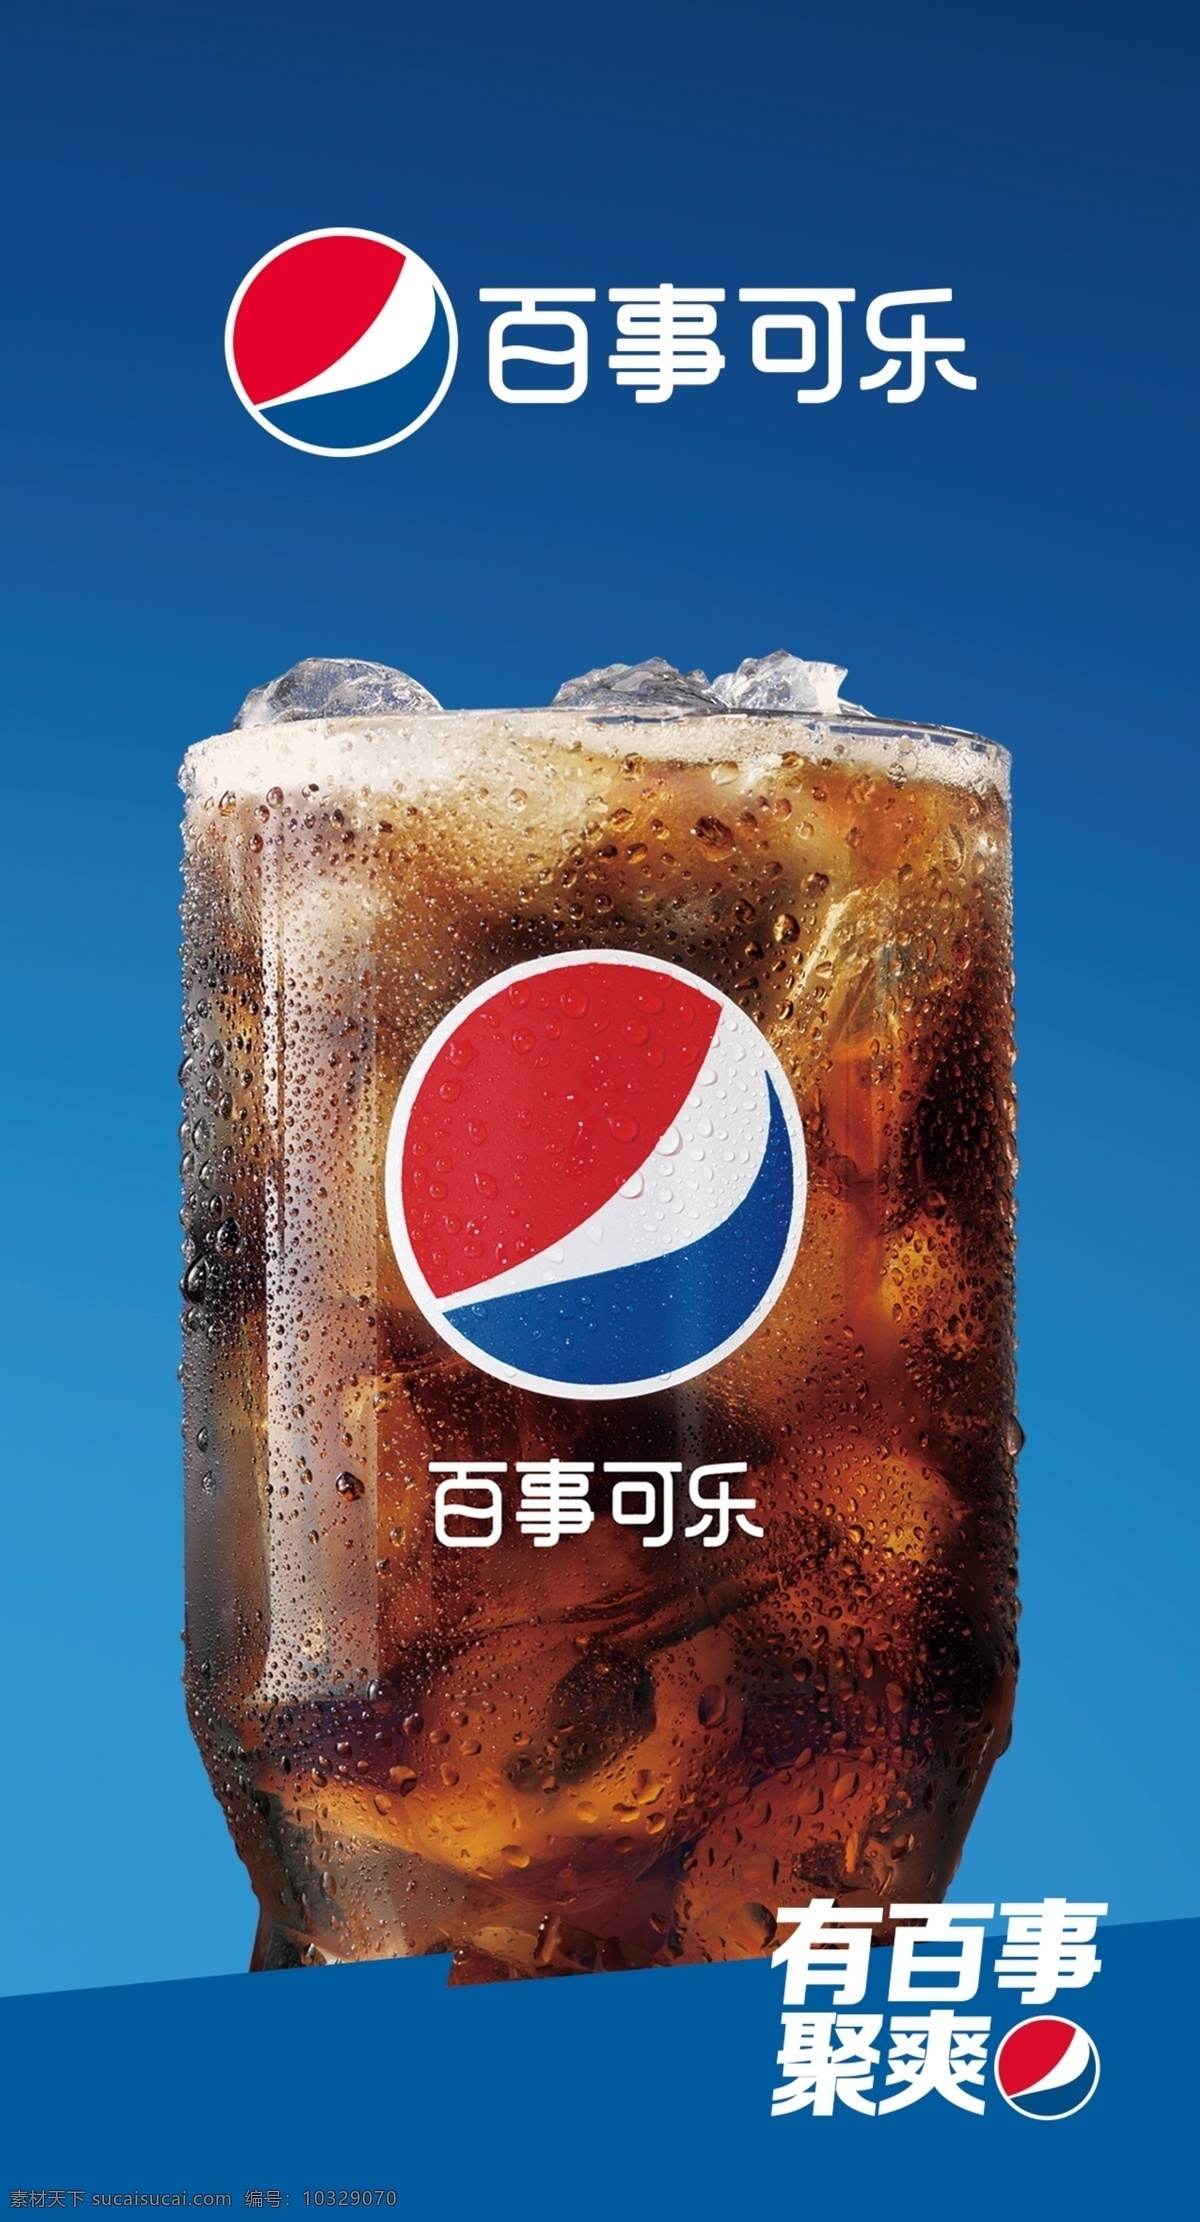 可乐 冰 百事 蓝色 logo 海报 广告